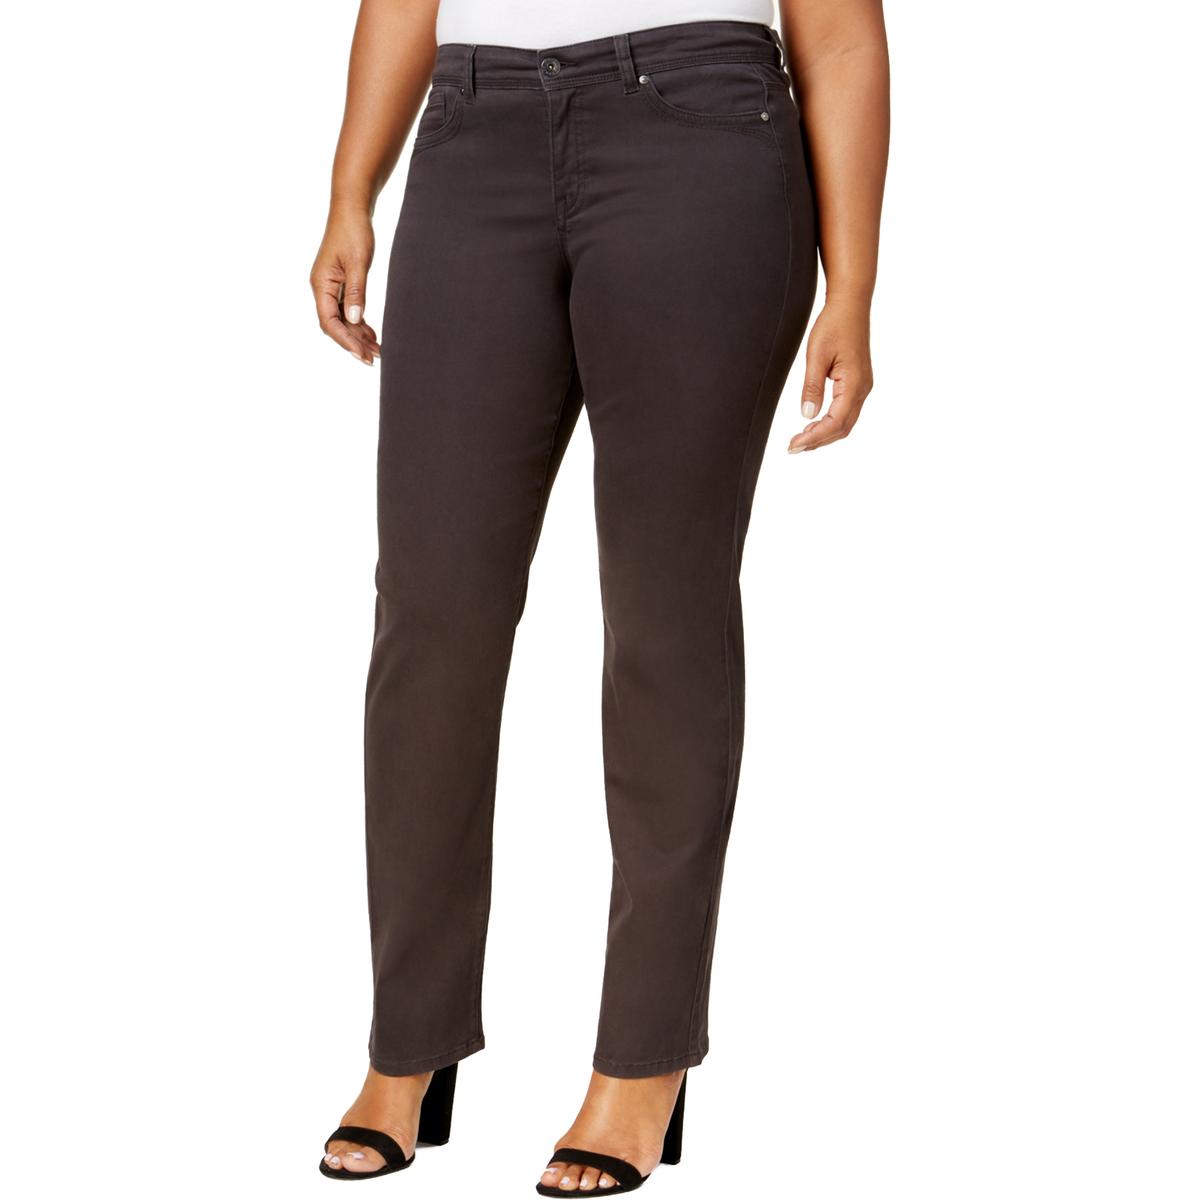 Style & Co. Women's Jeans - Sears